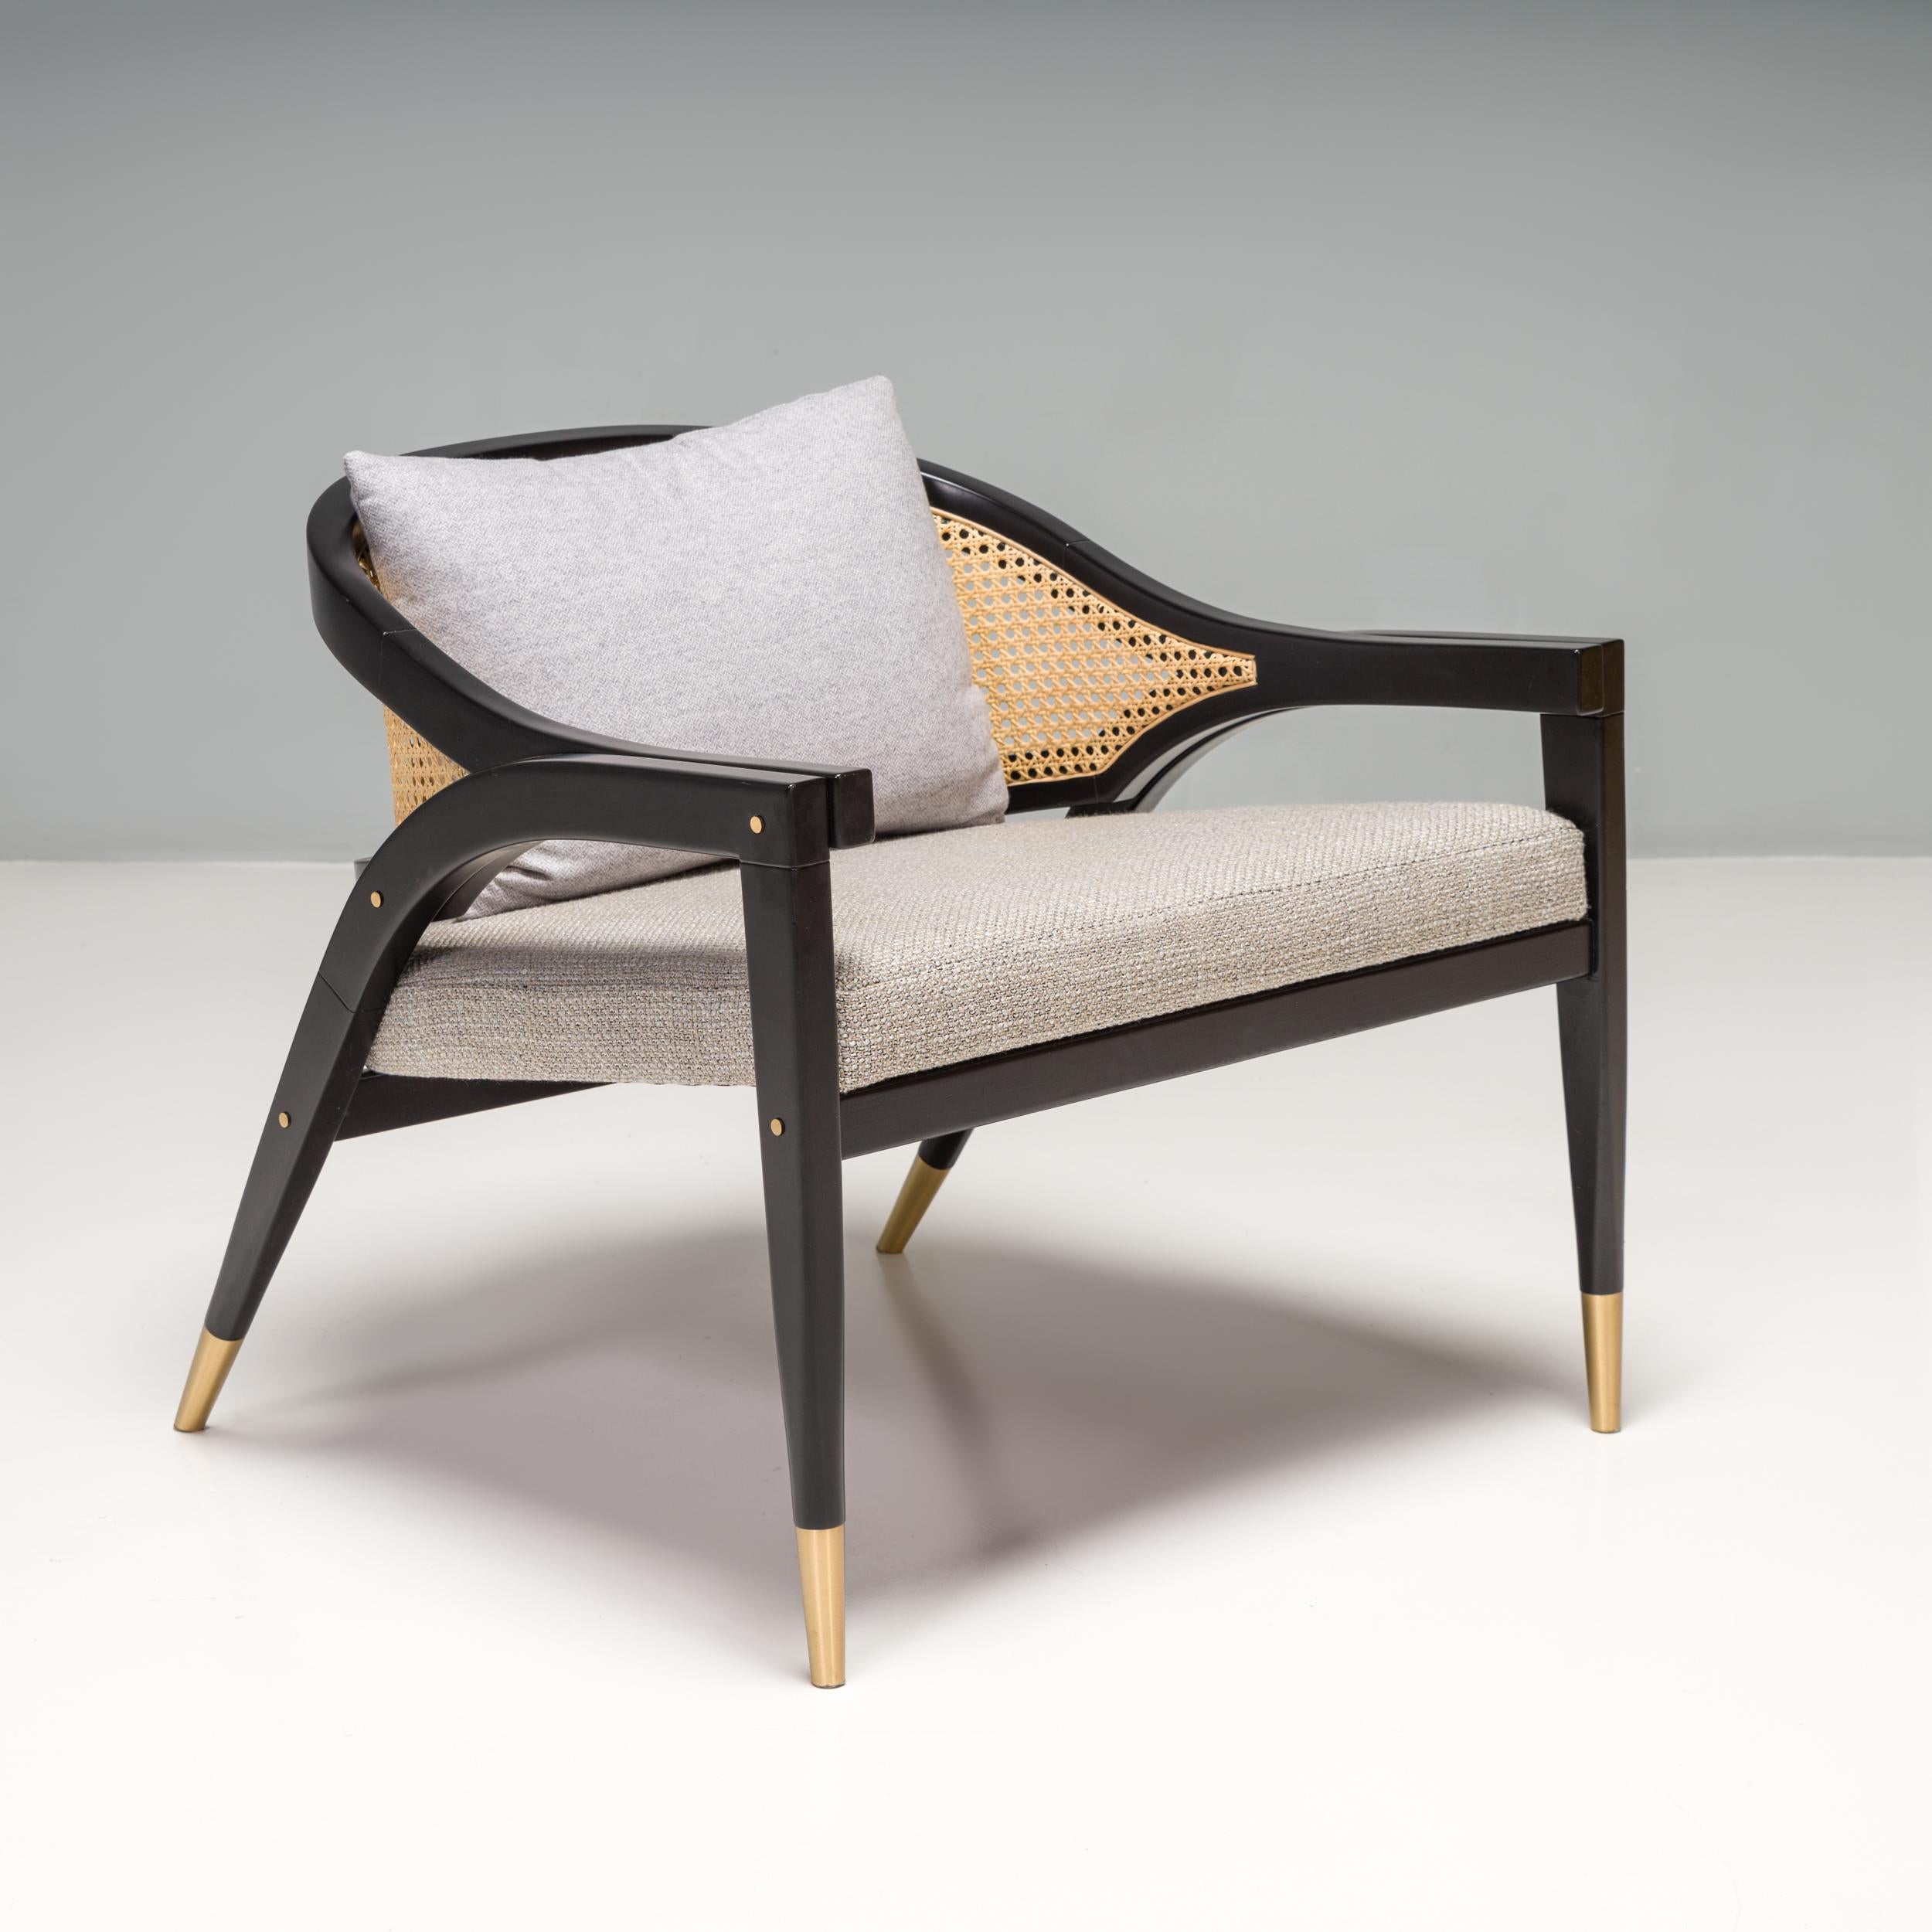 Der von DUISTT entworfene und in Portugal handgefertigte Sessel Wormley ist vom Edward Wormley Captain's Chair aus der amerikanischen Moderne der 1950er Jahre inspiriert.

Der Loungesessel besteht aus einem Gestell aus Platanenholz mit satinierter